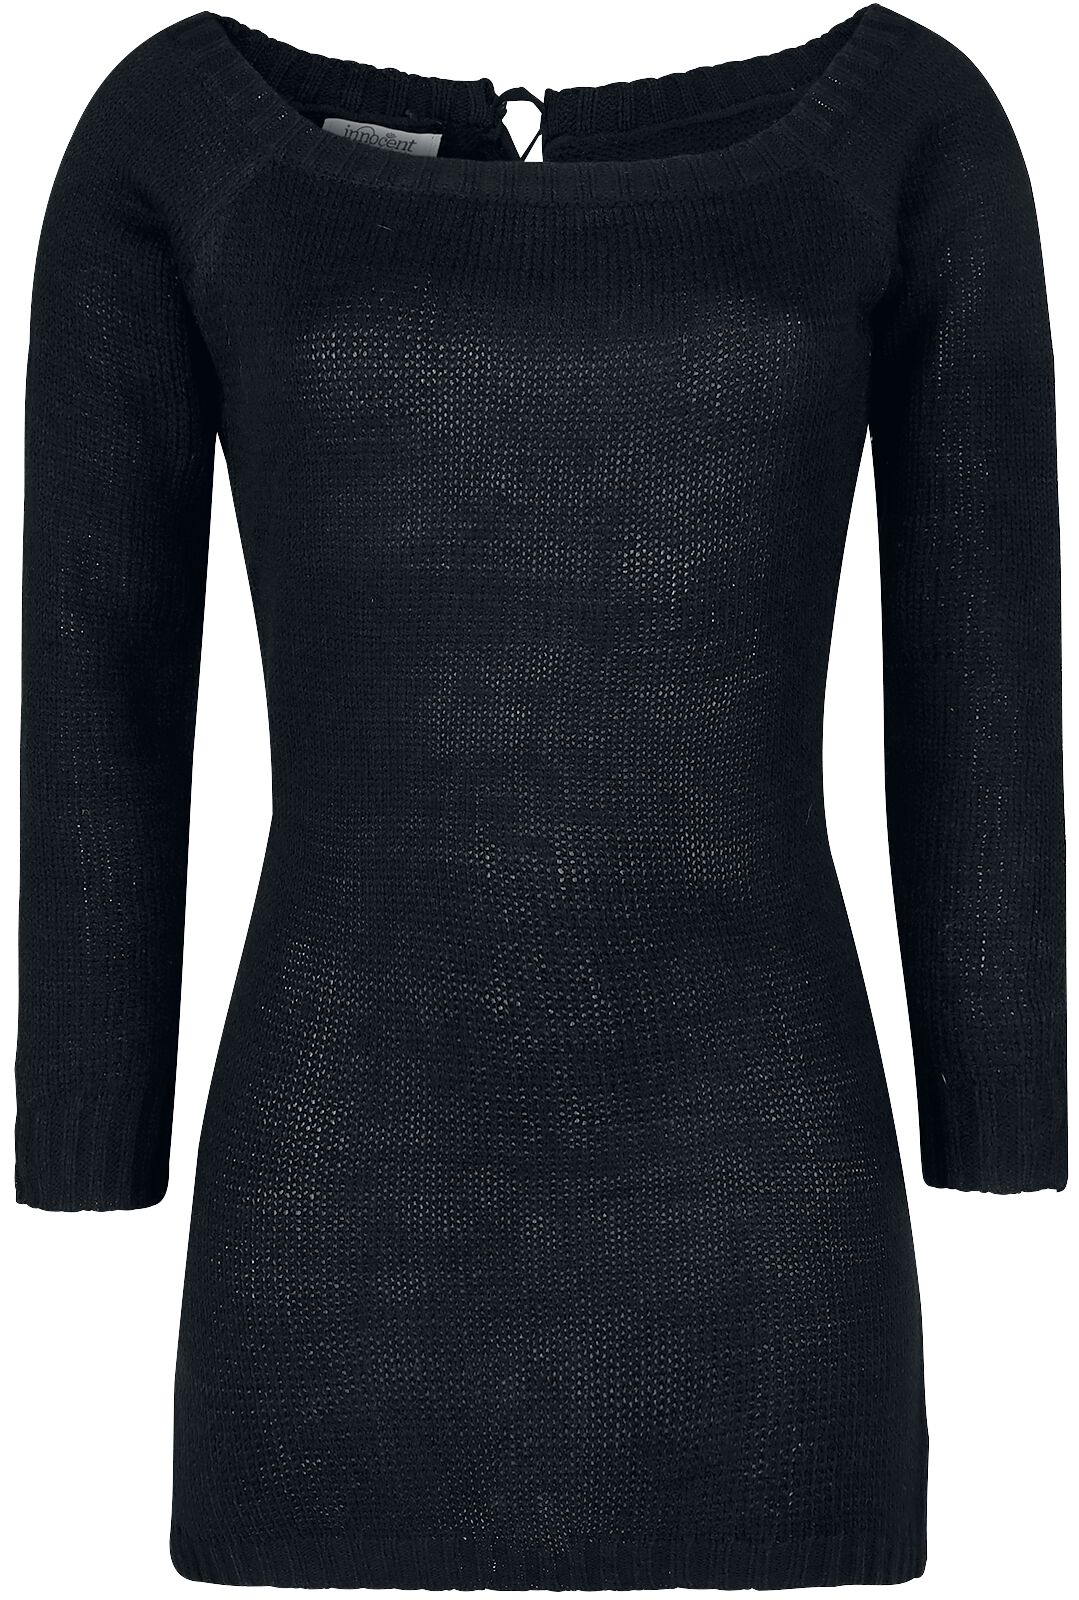 Pull tricoté de Innocent - Hena - S à XXL - pour Femme - noir